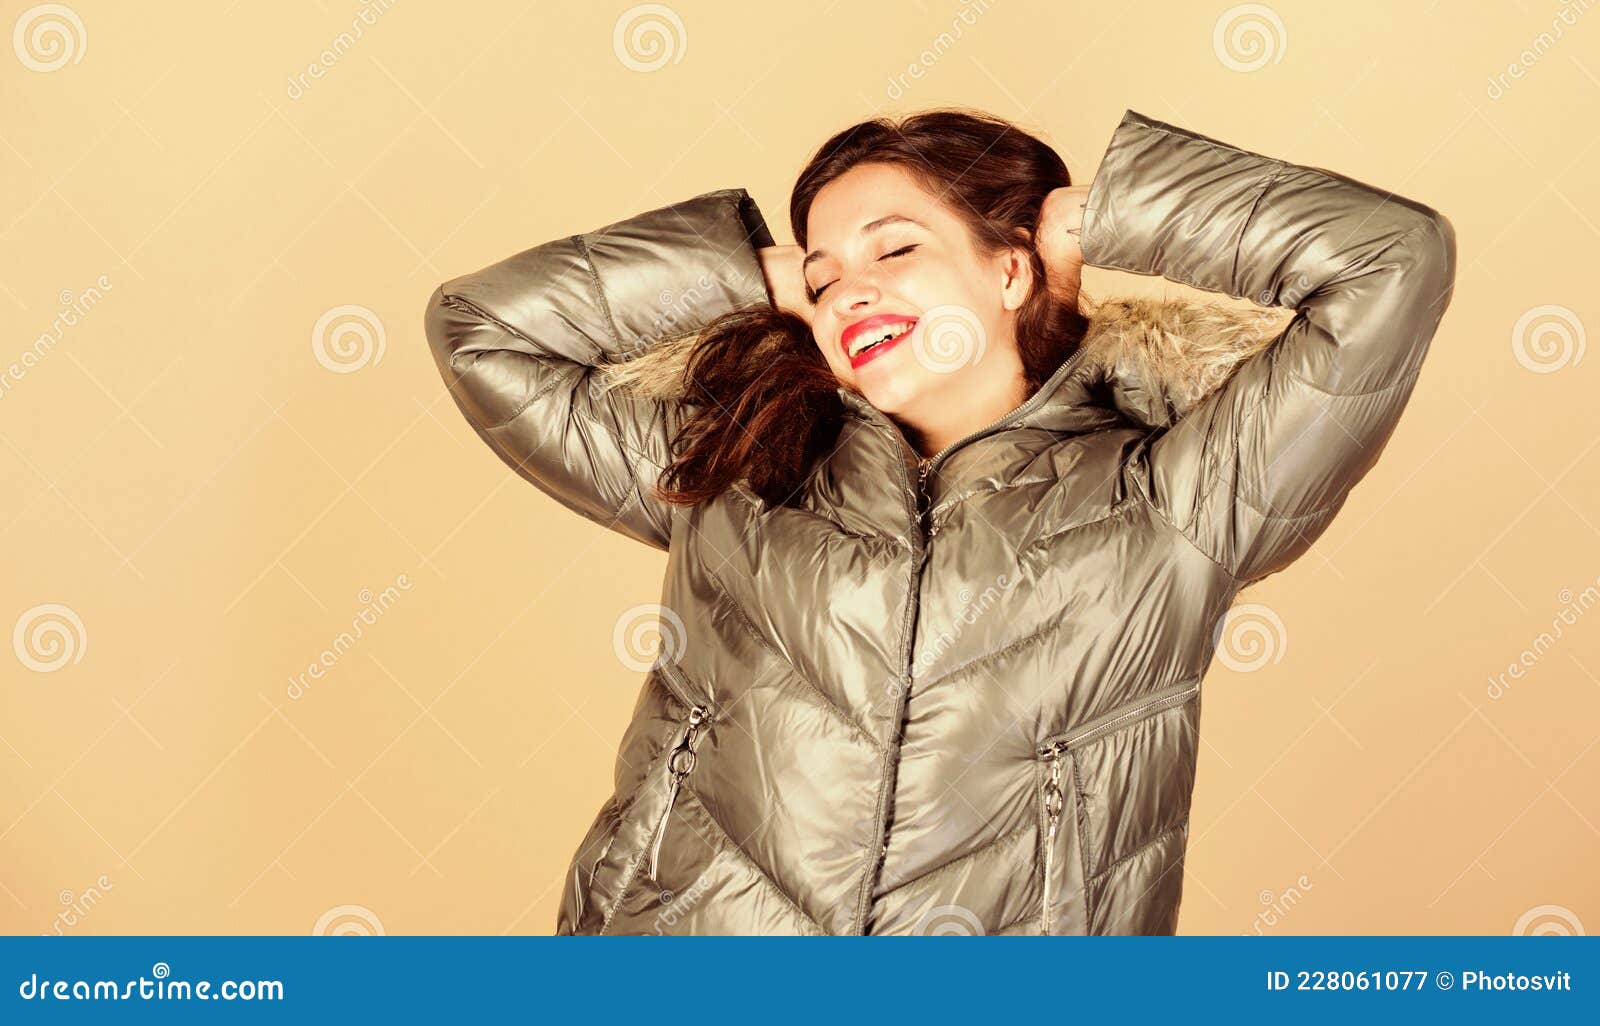 https://thumbs.dreamstime.com/z/disfrutando-de-su-traje-linda-chica-usa-ropa-moda-para-el-clima-fr%C3%ADo-tener-estilo-este-invierno-mujer-emocional-en-chaqueta-228061077.jpg